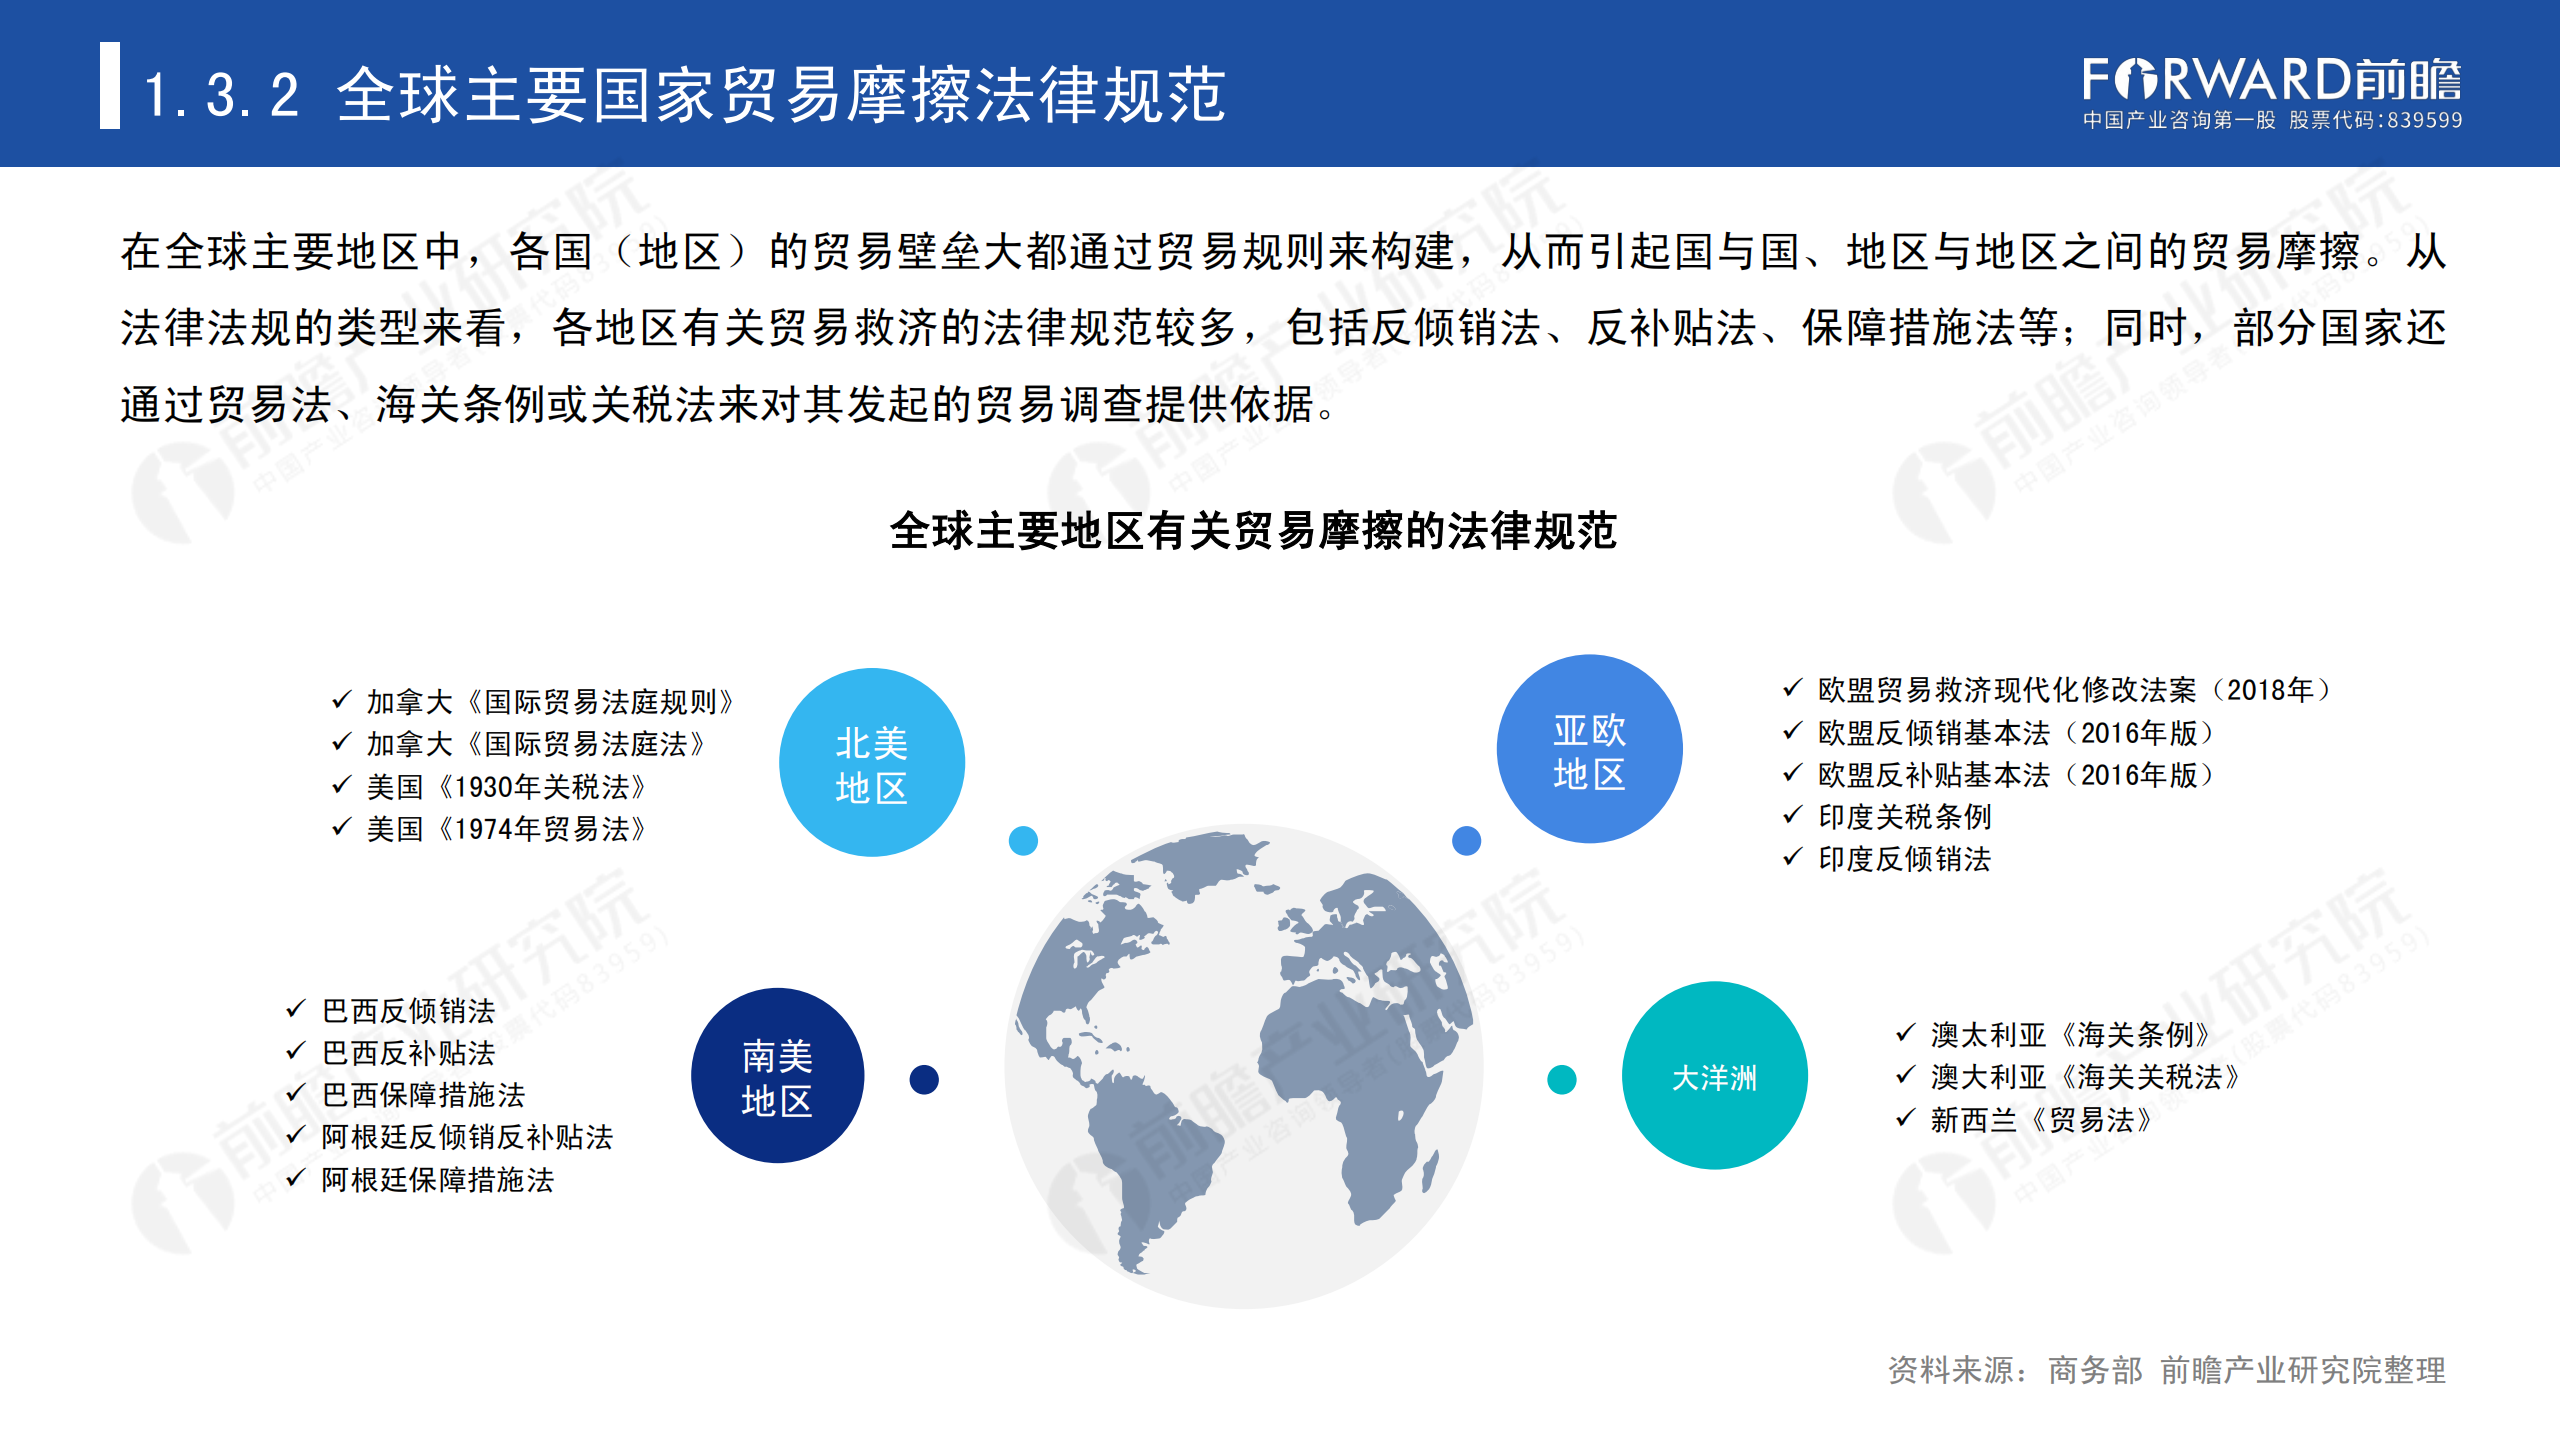 2020年中国贸易摩擦全景回顾-前瞻-2021-64页_09.png